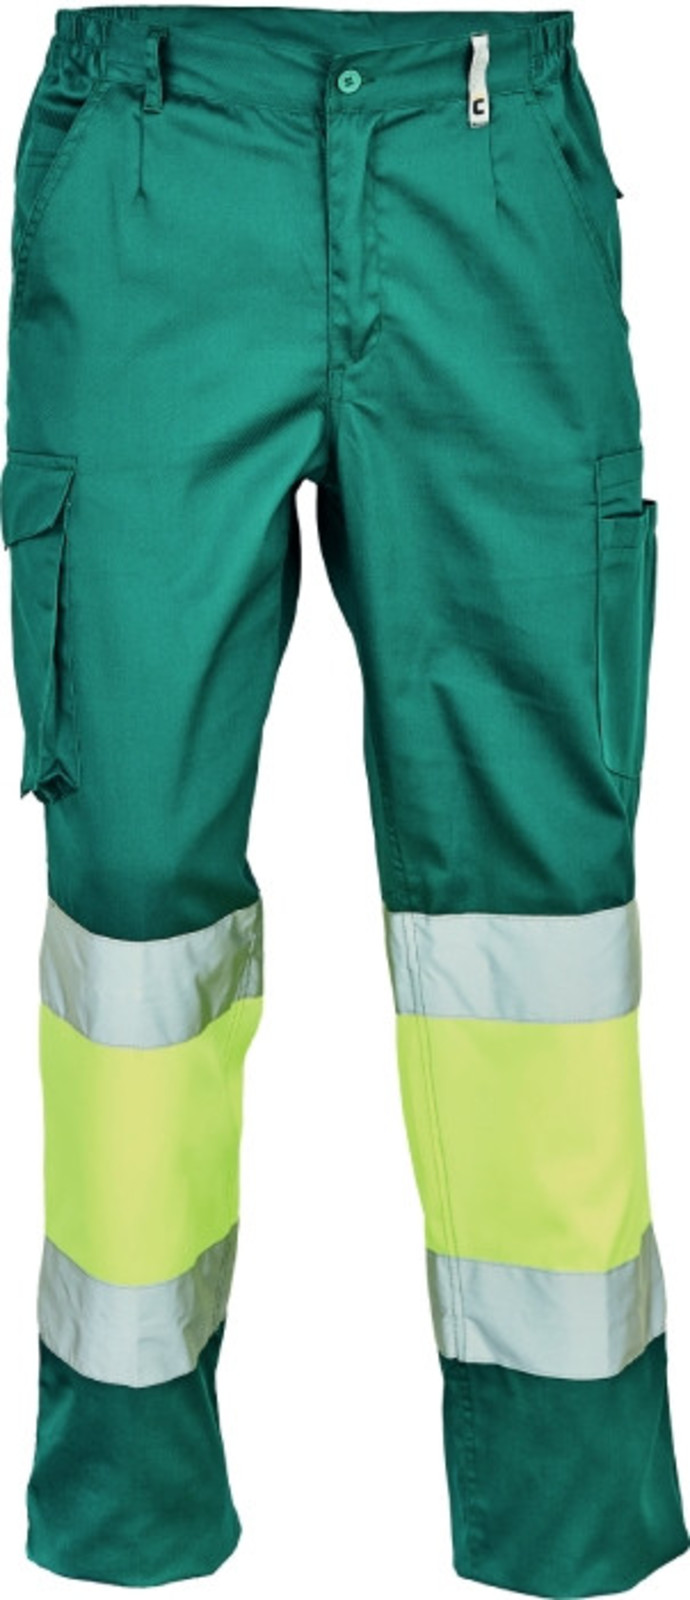 Pracovné reflexné nohavice Cerva Ciudades Bilbao HV - veľkosť: 50, farba: zelená/žltá